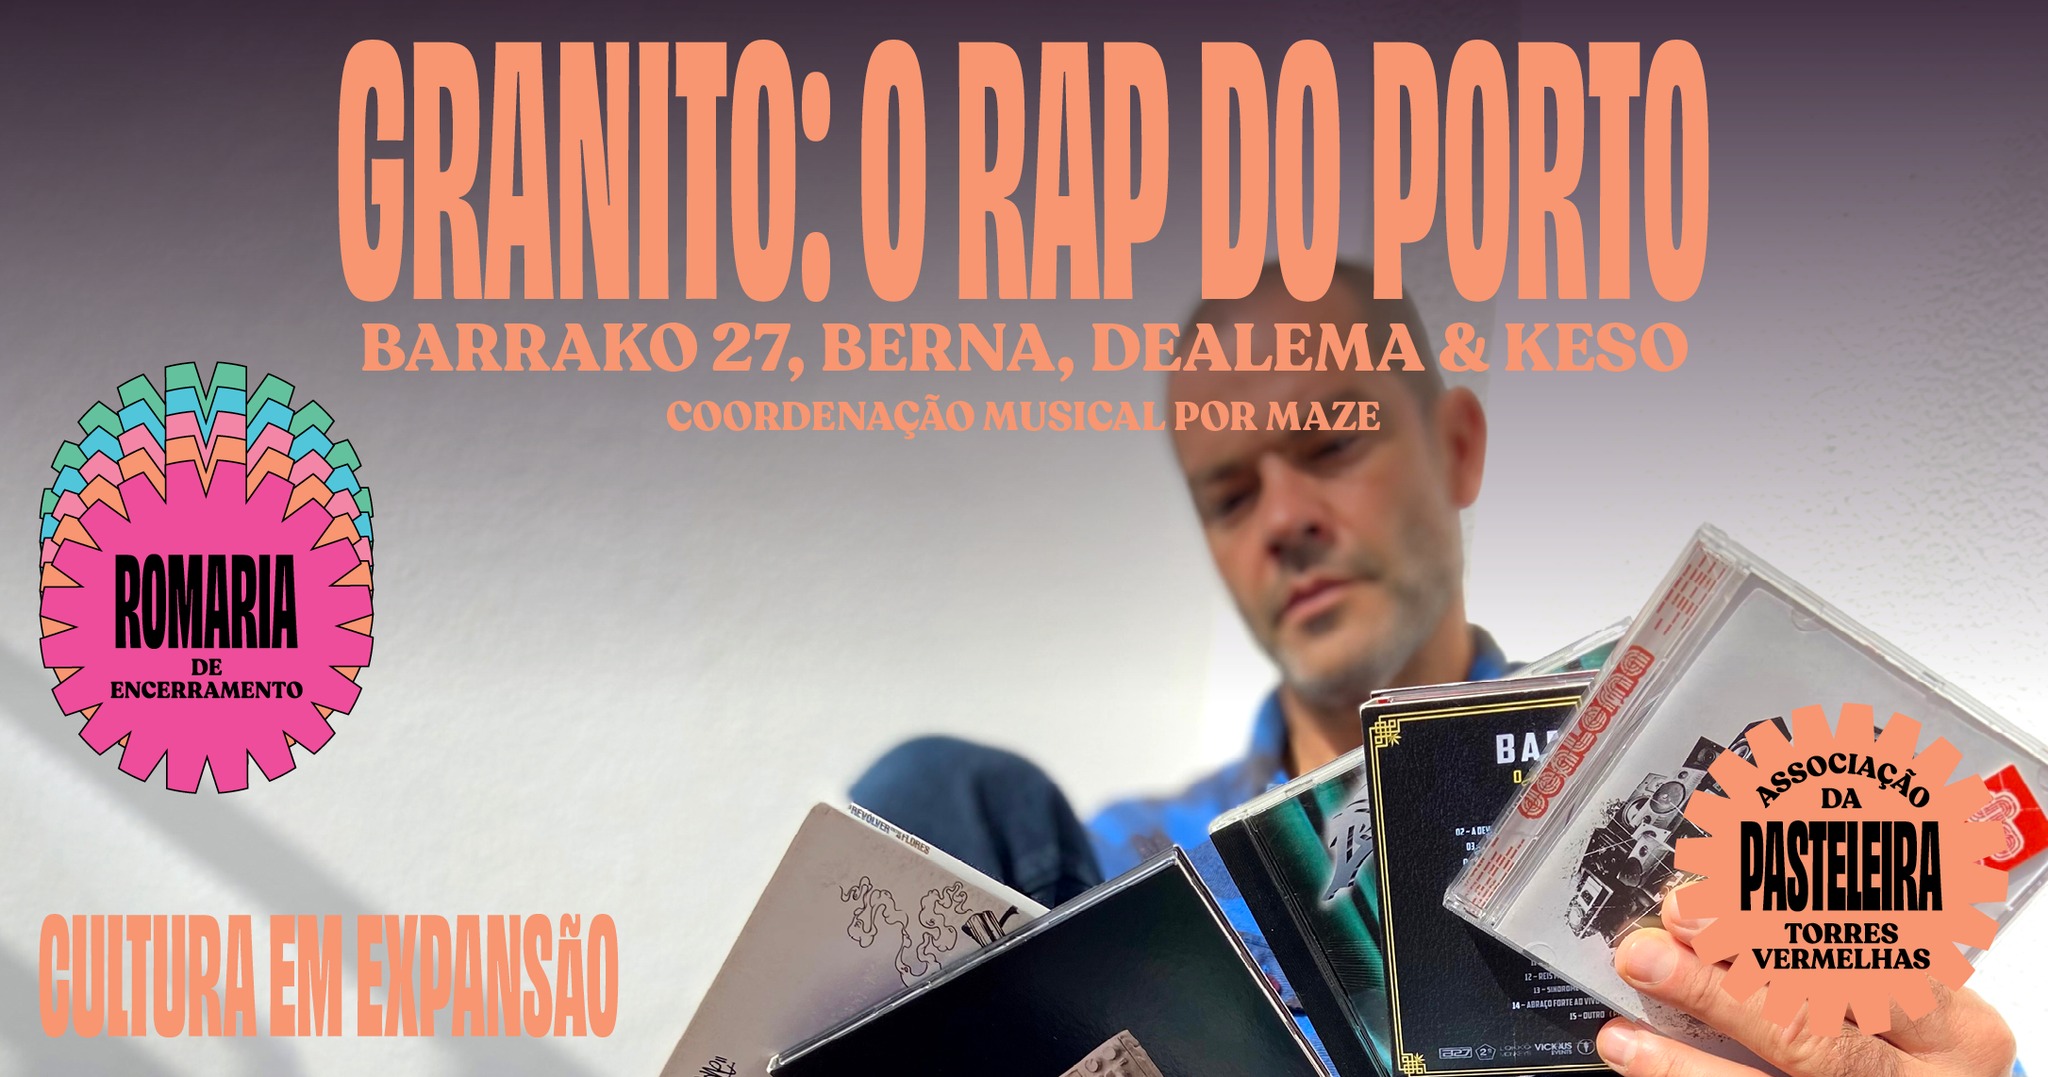 Granito: o rap do Porto • Barrako 27, Berna, Dealema & Keso [Romaria Cultura em Expansão] 